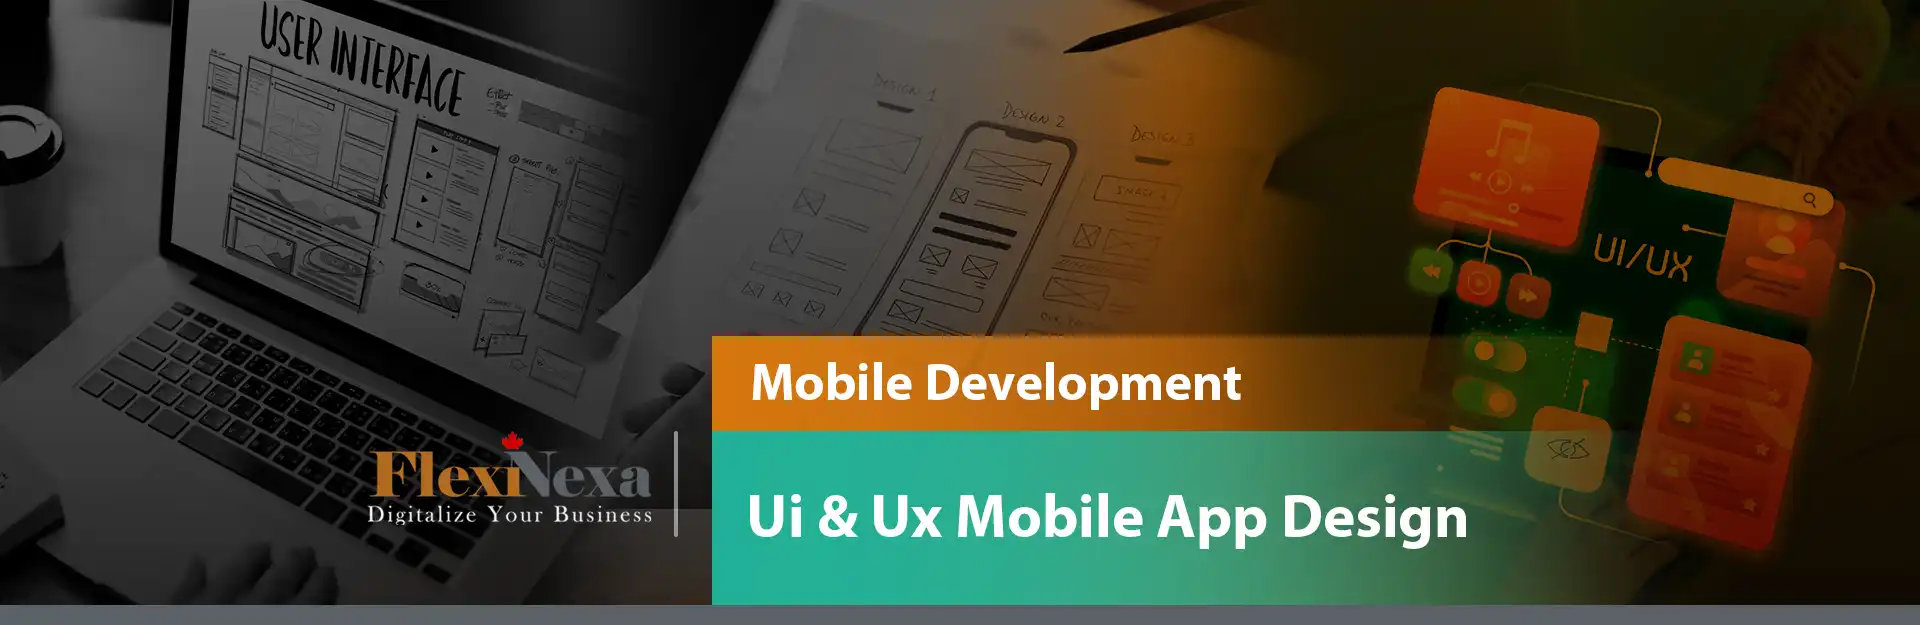 تسلط بر توسعه موبایل: پیمایش هنر طراحی UI/UX در ایجاد اپلیکیشن